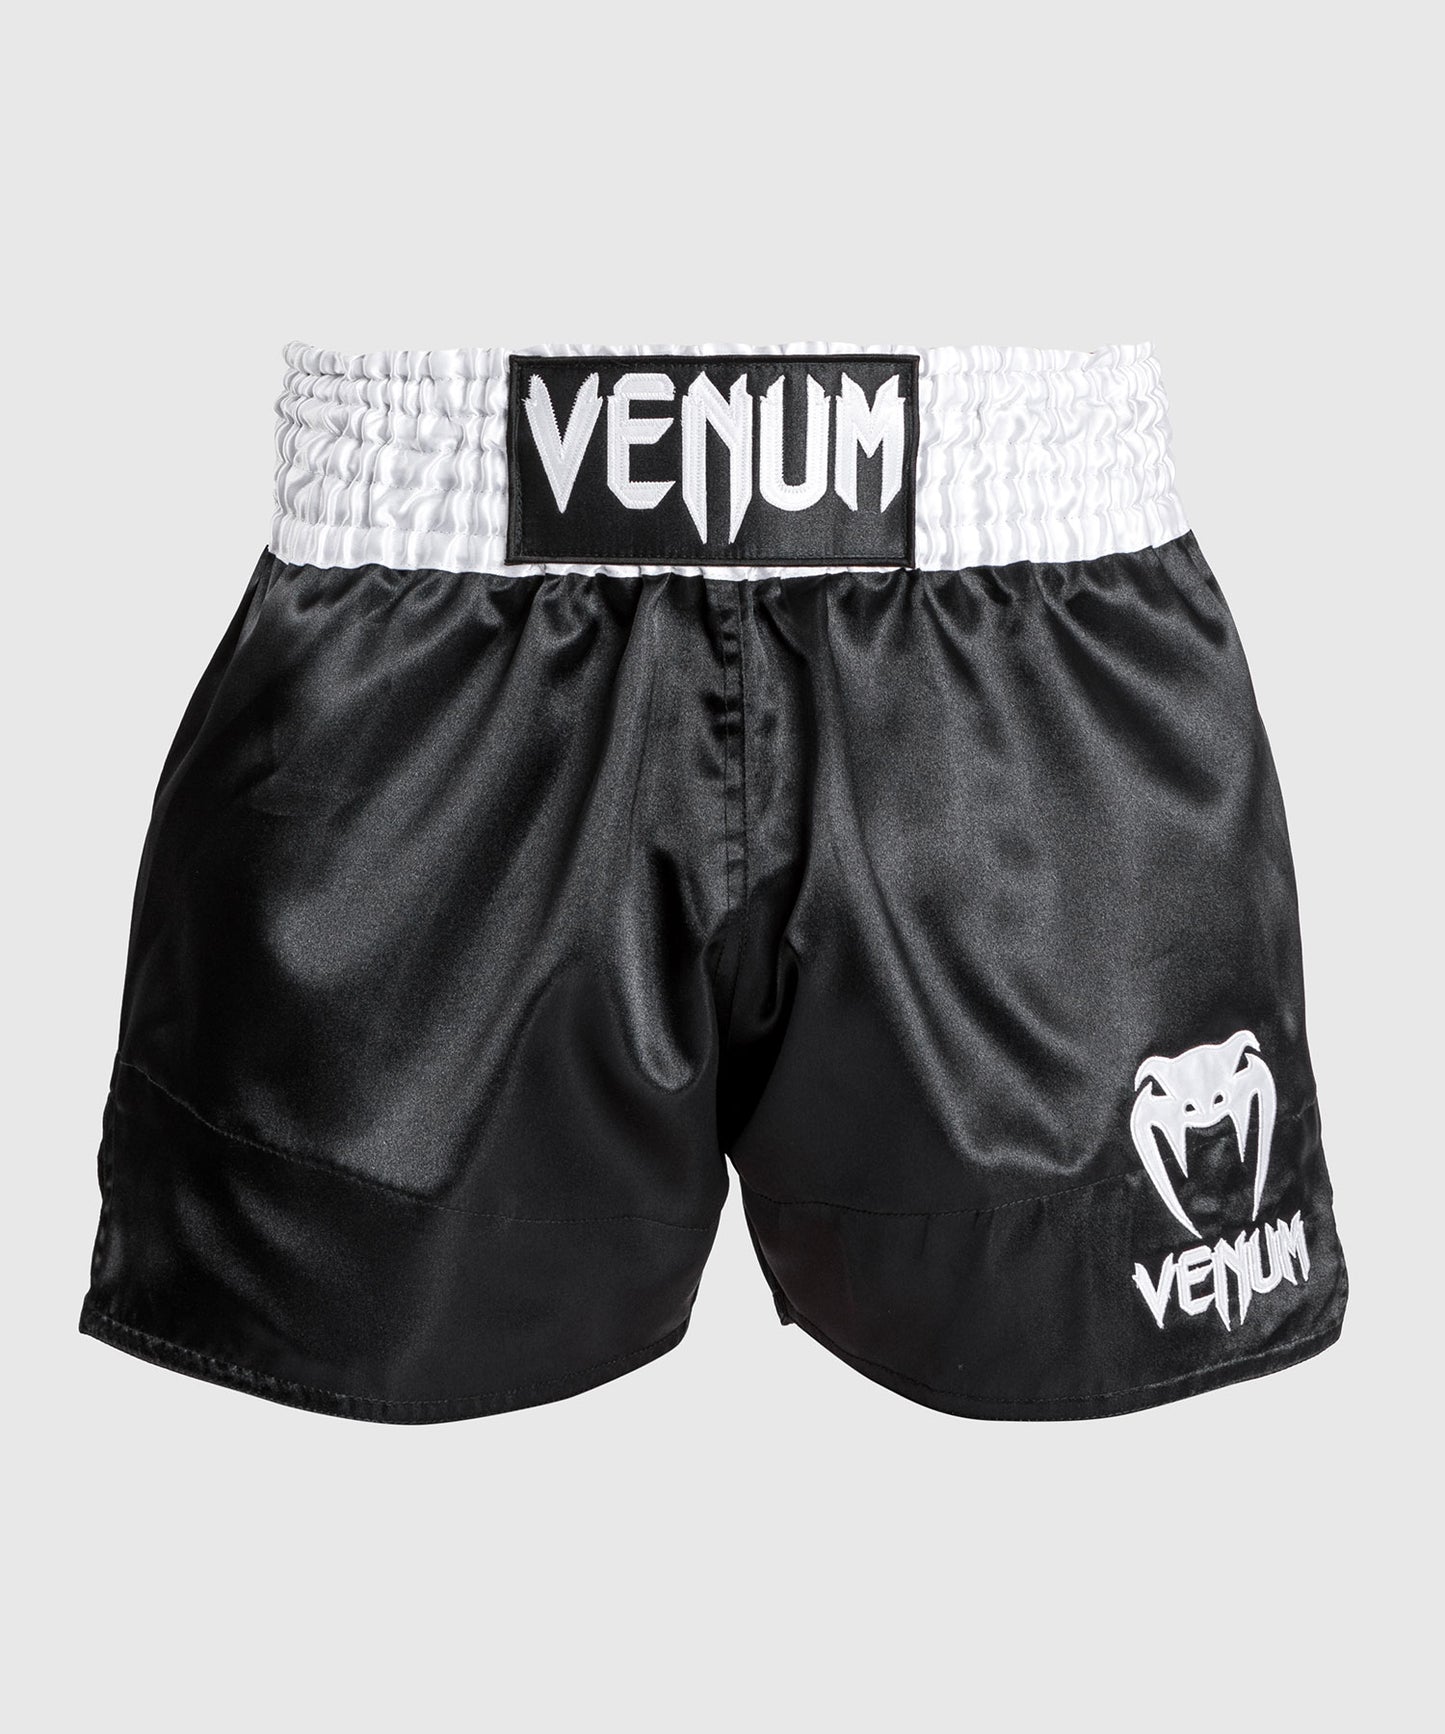 Venum Classic Muay Thaï Short - Black/White/White